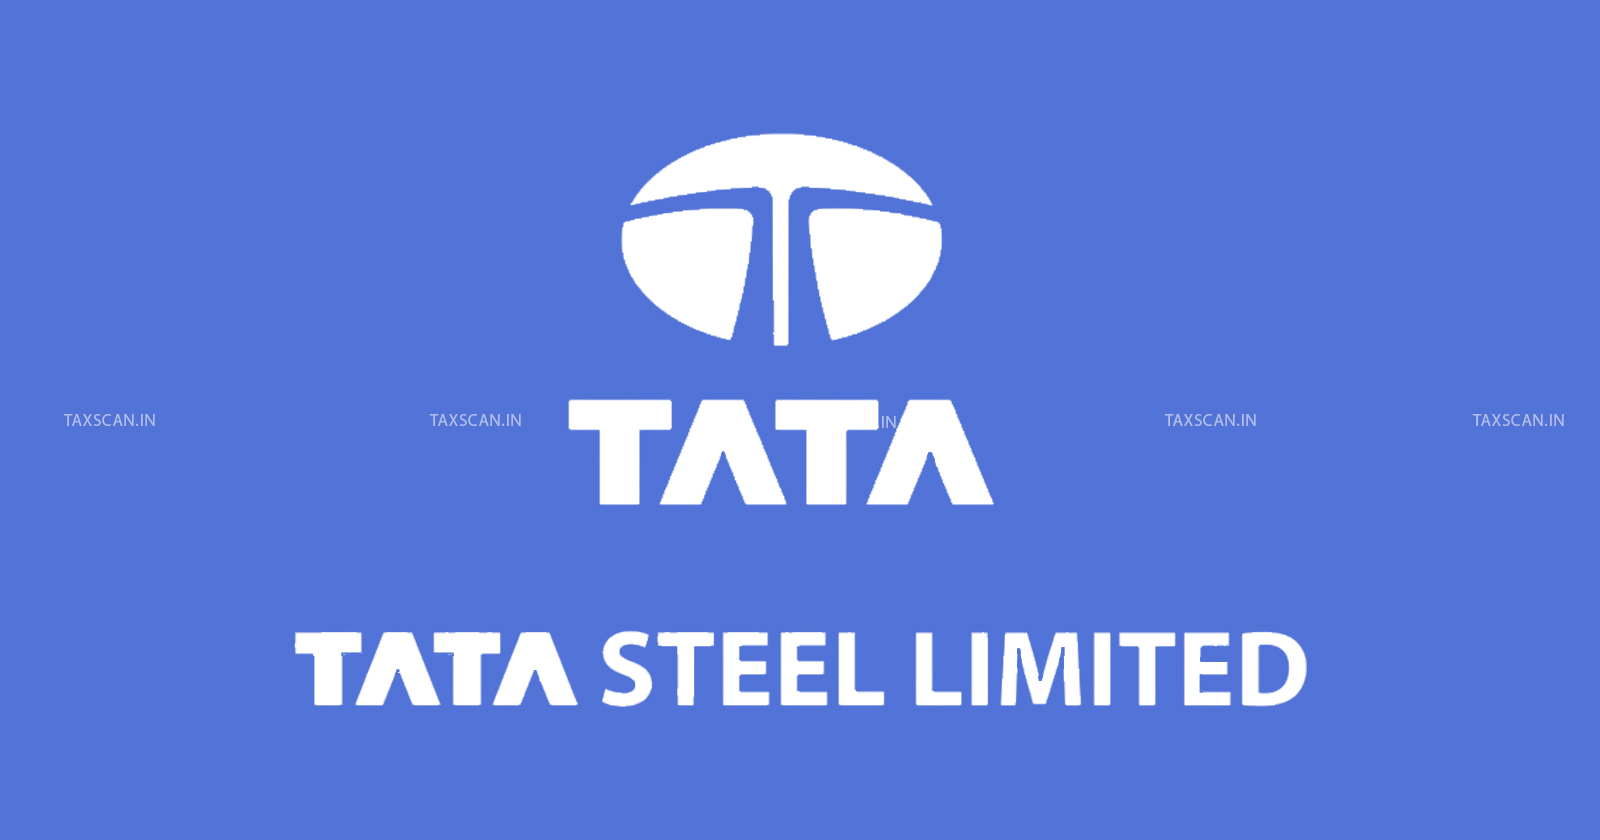 ITAT - ITAT Mumbai - Income tax - Income tax news - Tata Steel - taxscan